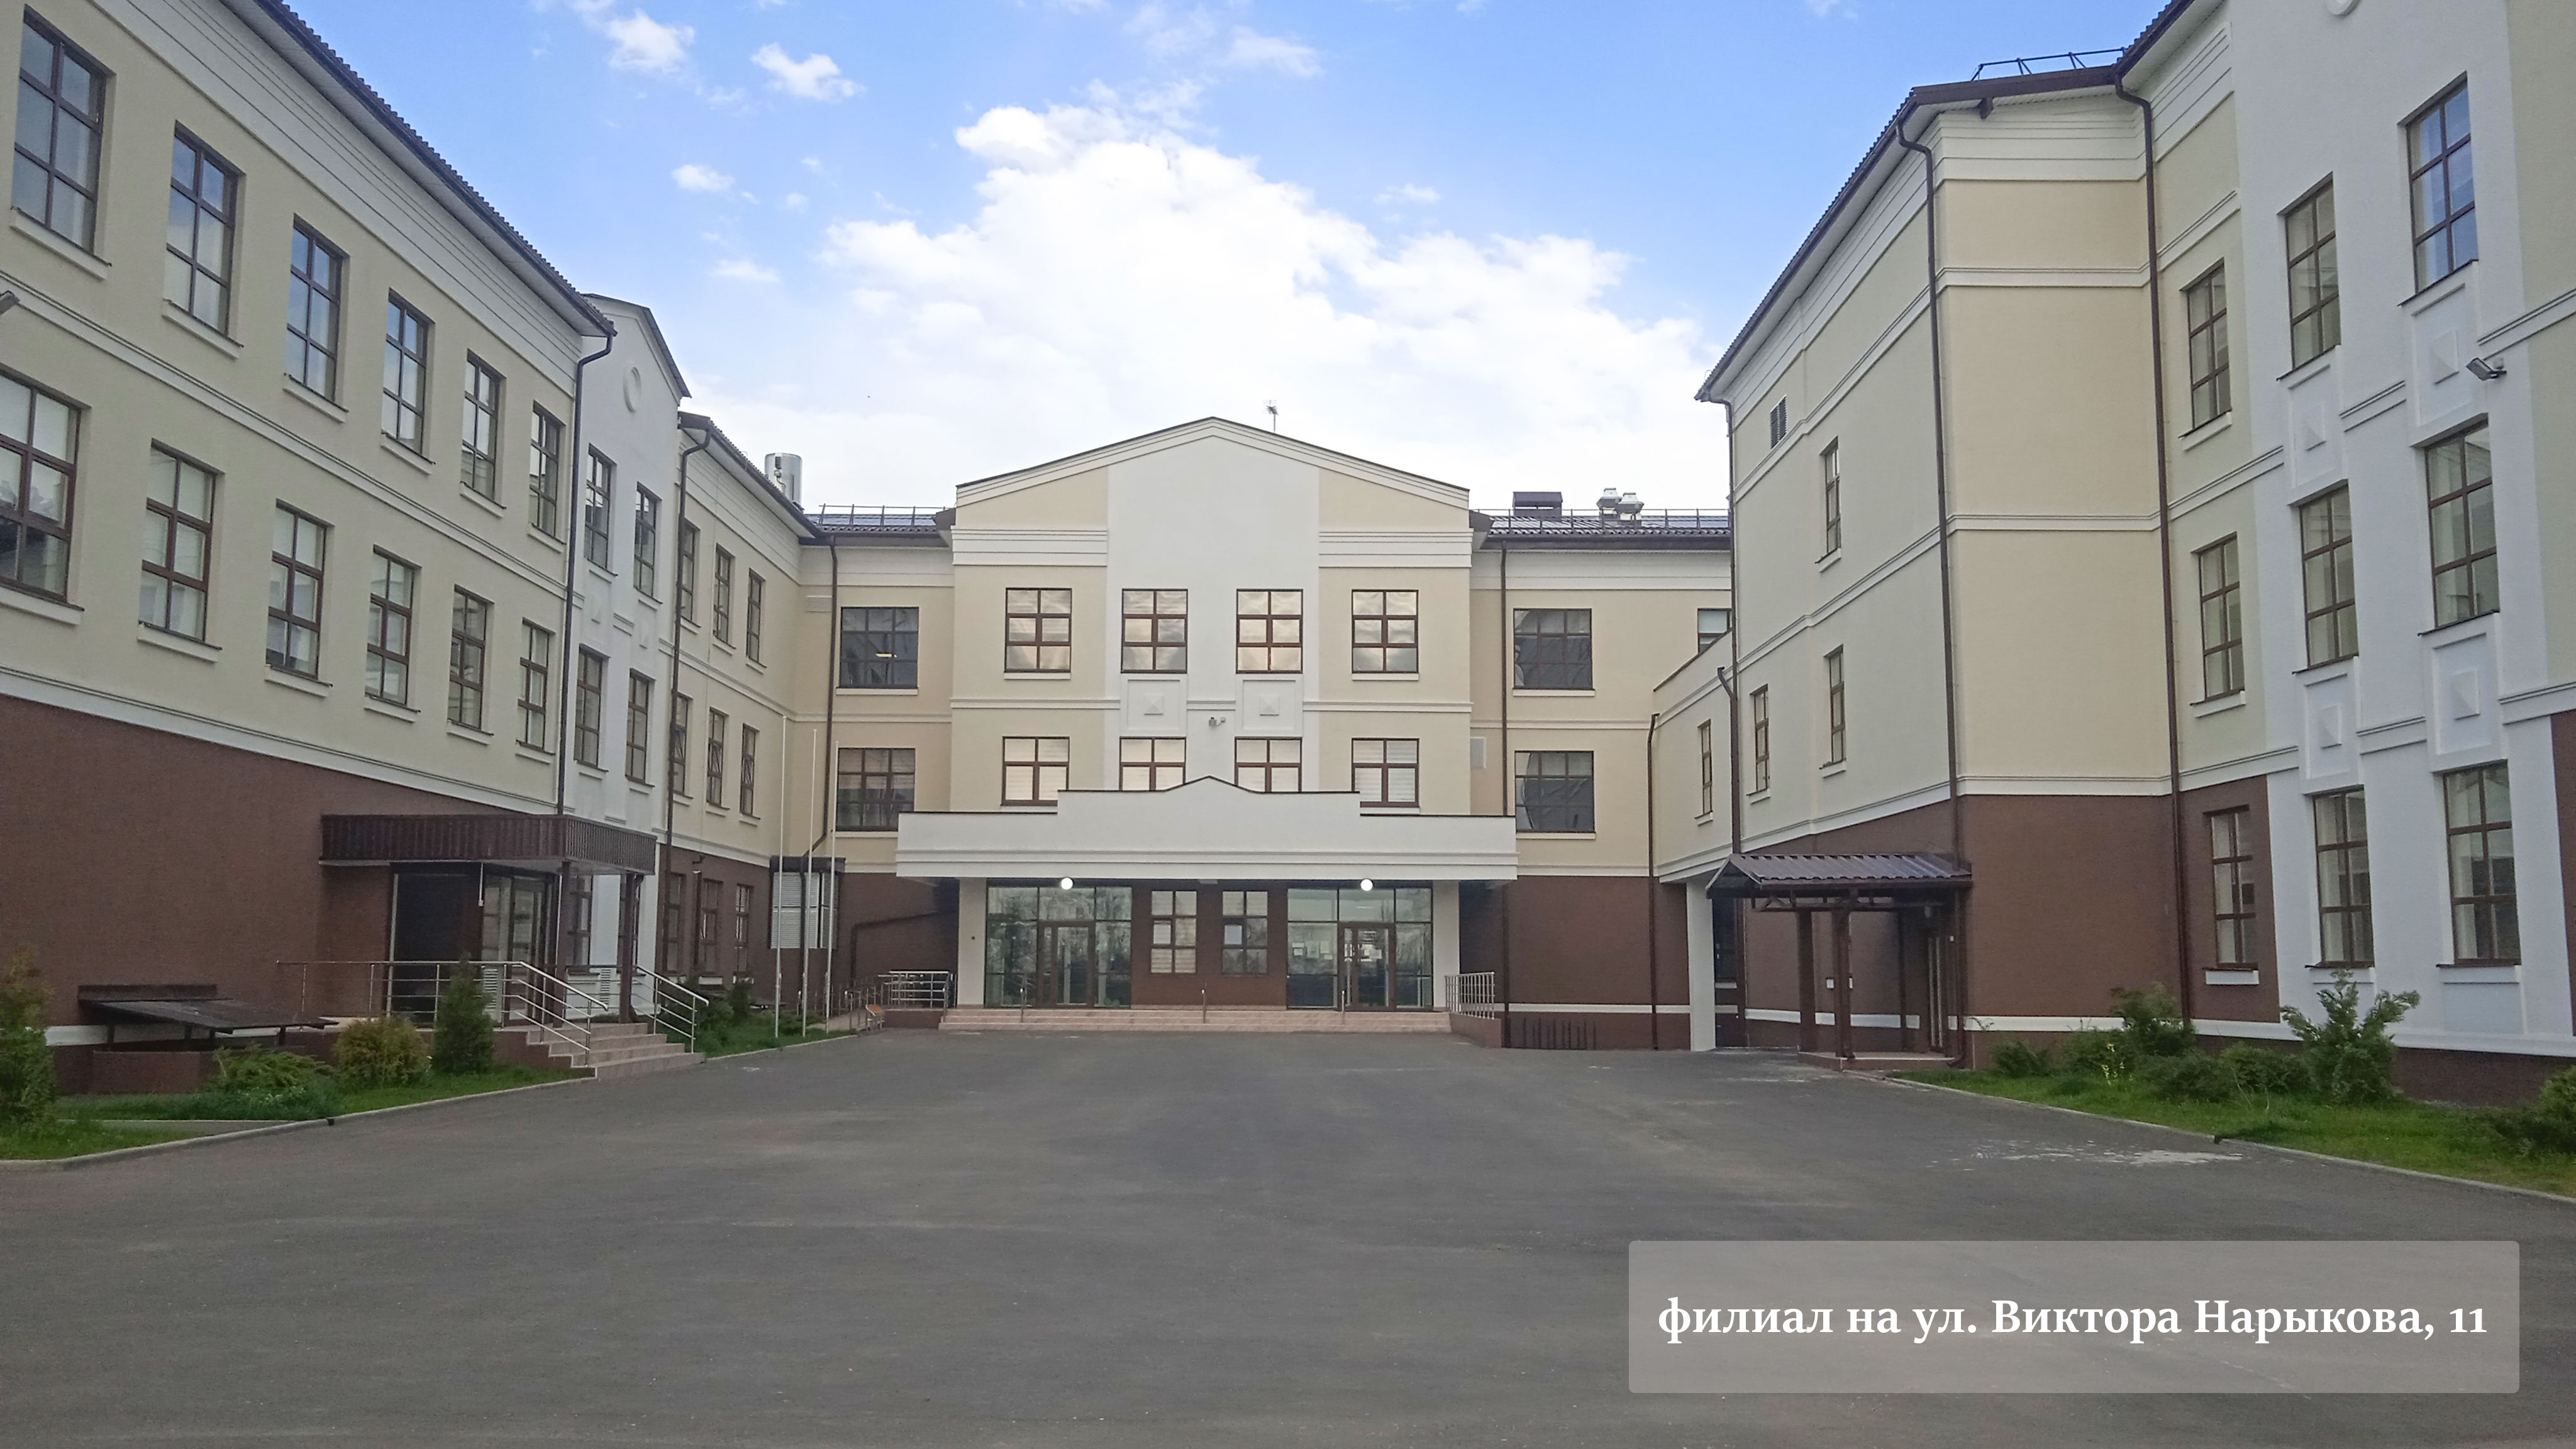 Центральный вход филиала школы №84 г. Краснодар.